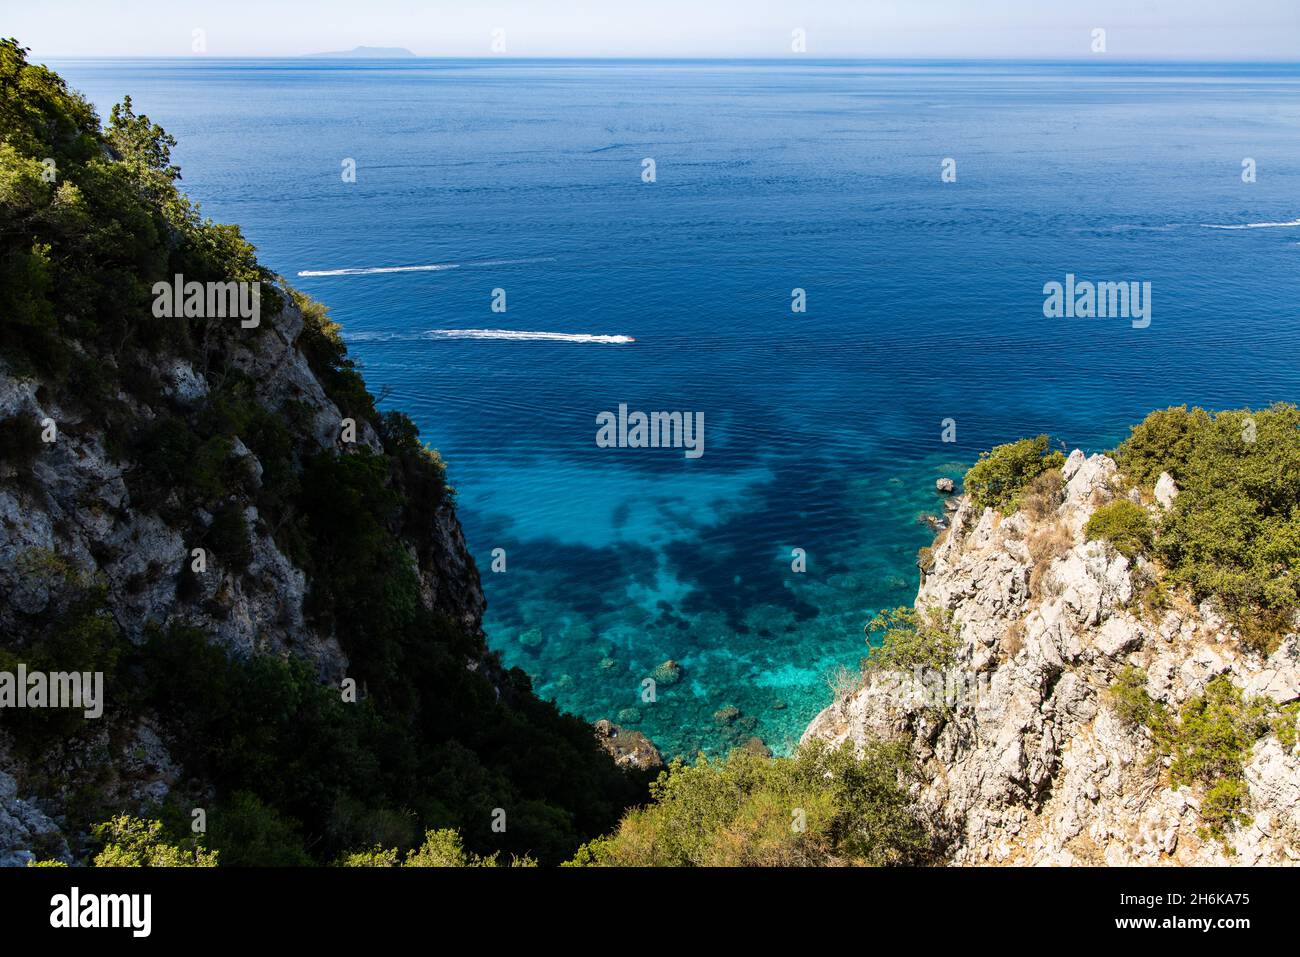 Vista aérea de la playa de Gjipe en la costa adriática - arena blanca, aguas turquesas, típicas de la costa adriática desde Croacia hasta Albania Foto de stock